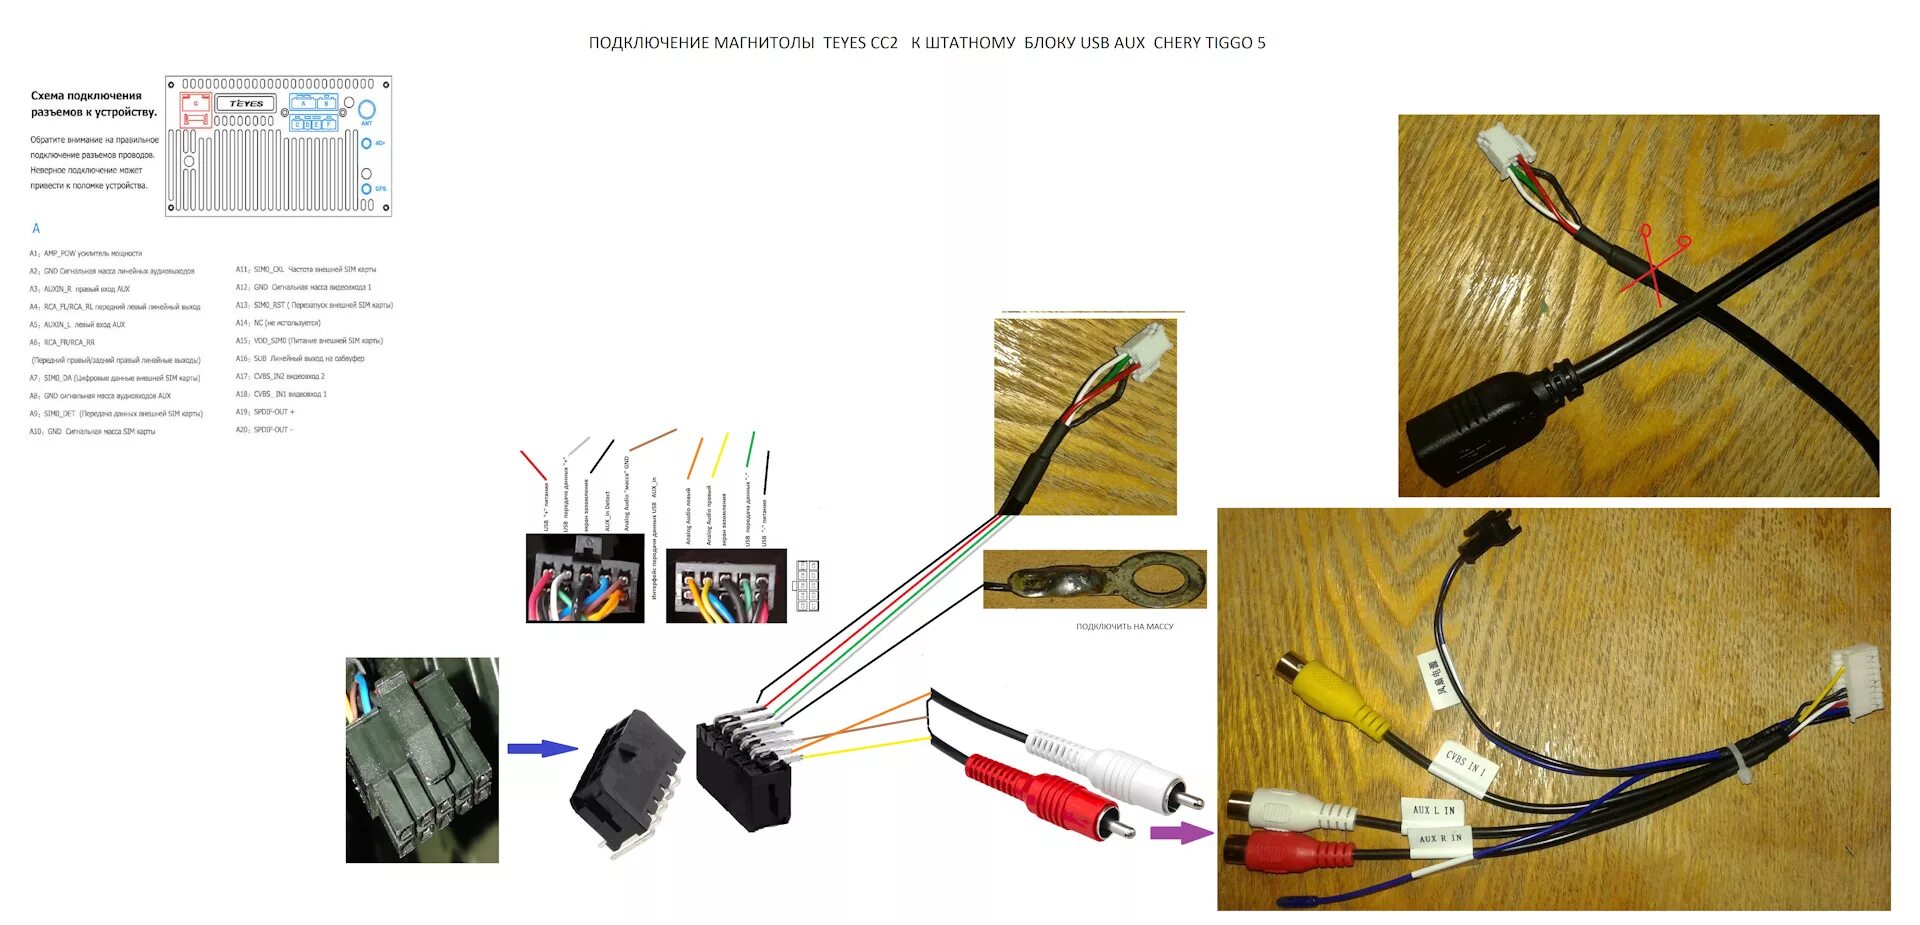 Сим карта для магнитолы teyes. Схема подключения магнитолы Teyes сс3. RCA кабель для магнитолы Teyes cc3. Кабель для подключения штатного разъема USB С Teyes cc3. Chery Tiggo 4 разъемы для USB.